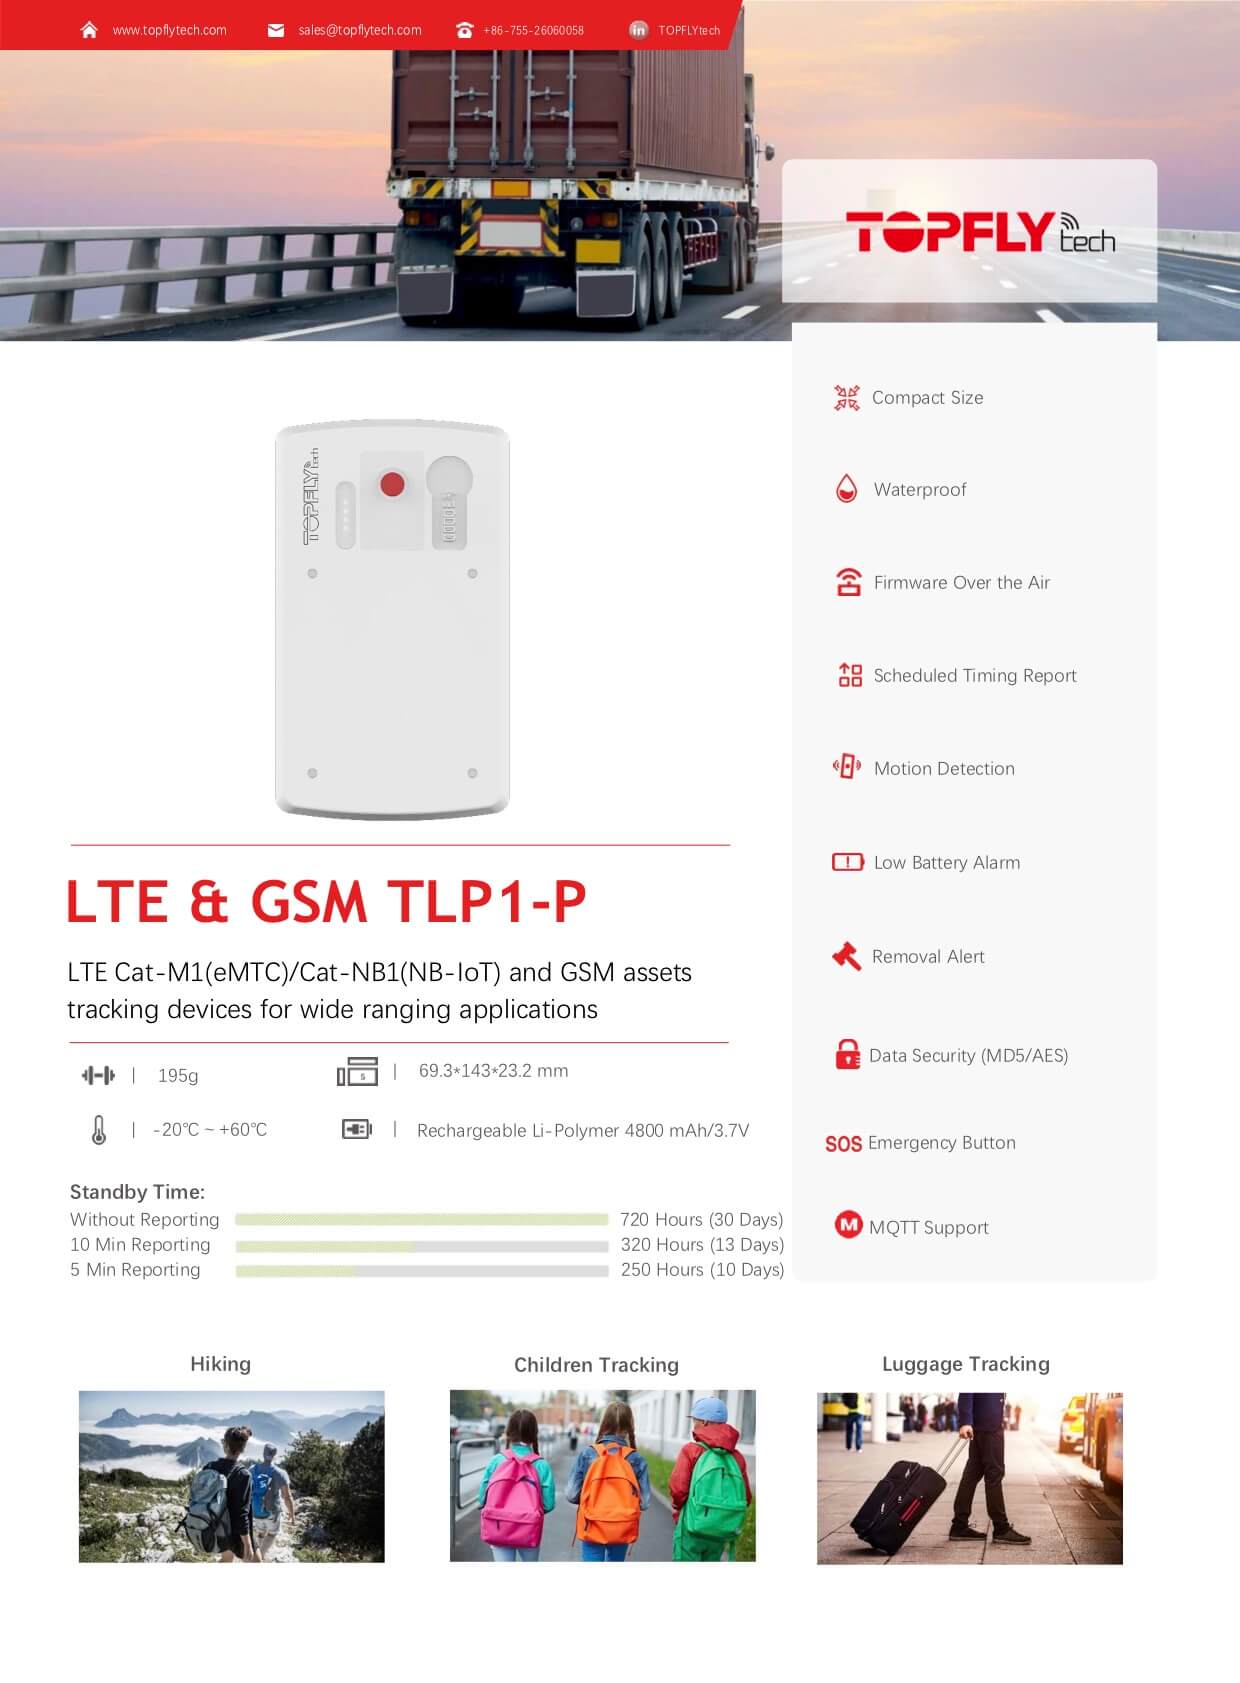 TLP1-P (4G LTE)